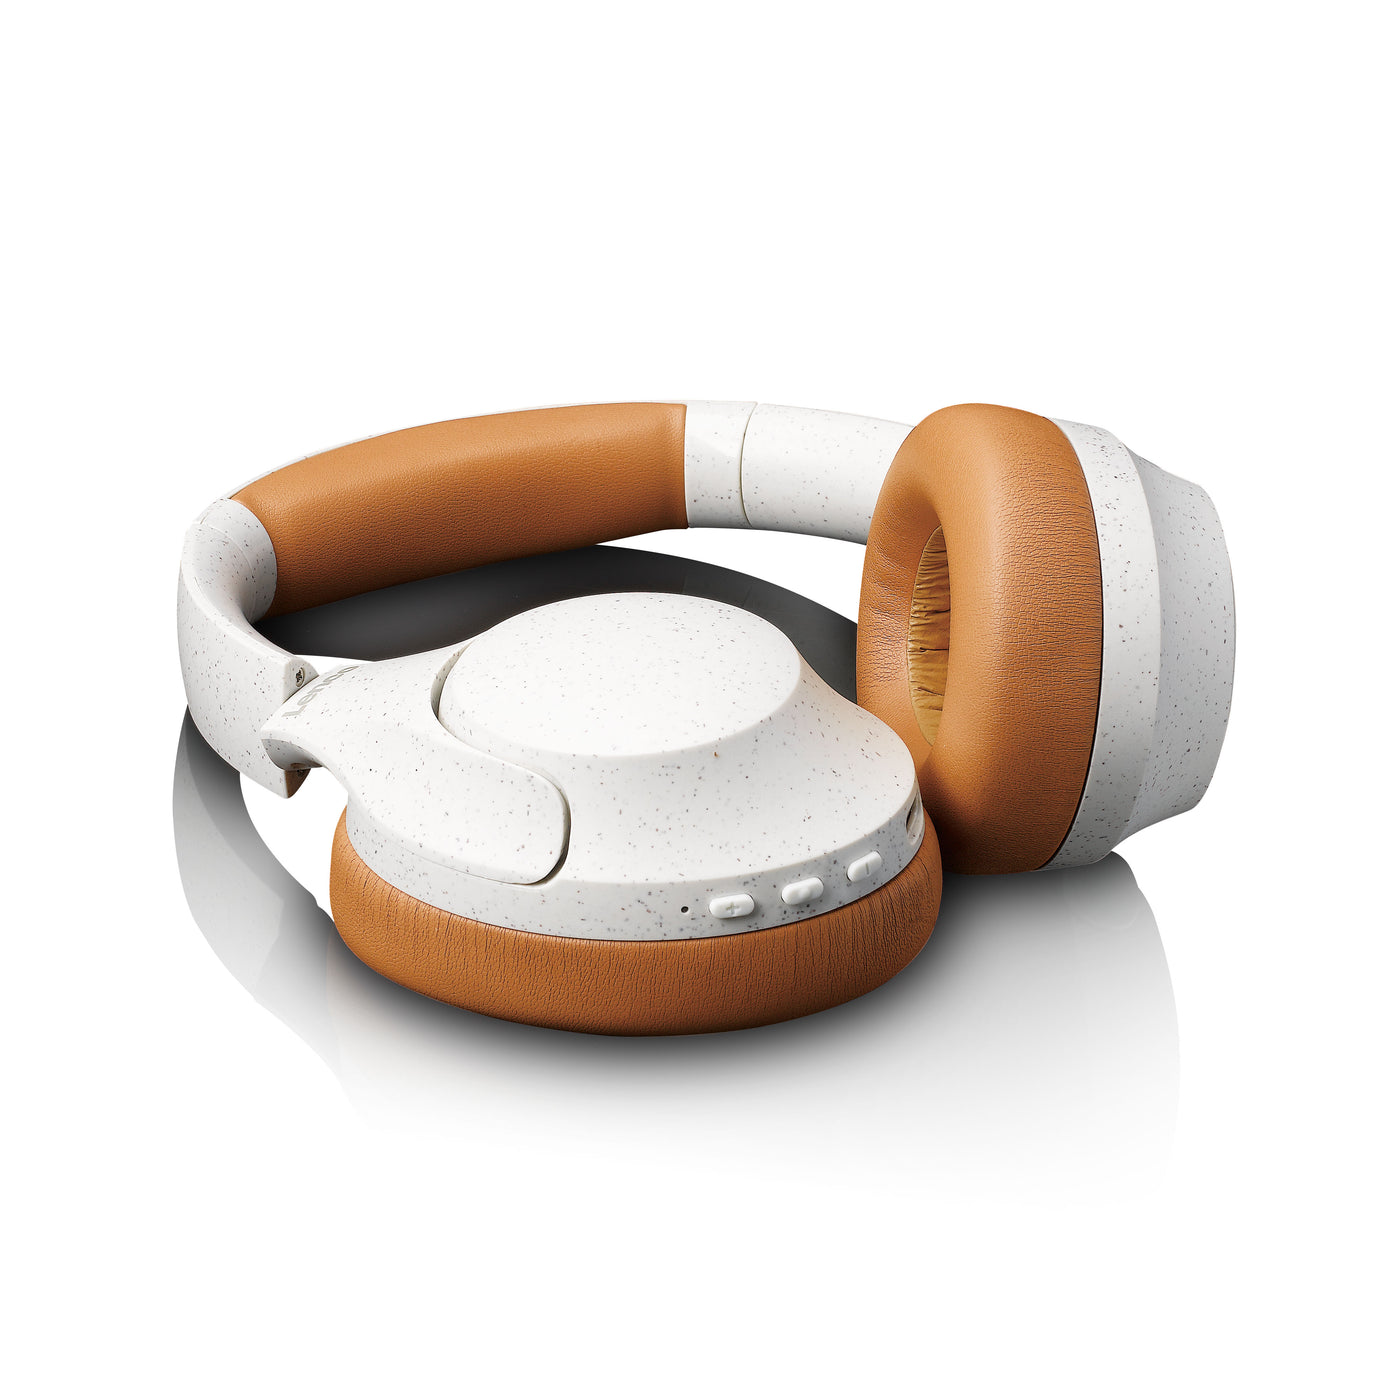 Lenco HPB-830GY - Casque sans fil Bluetooth® avec réduction de bruit active et microphones intégrés - Gris/Blanc